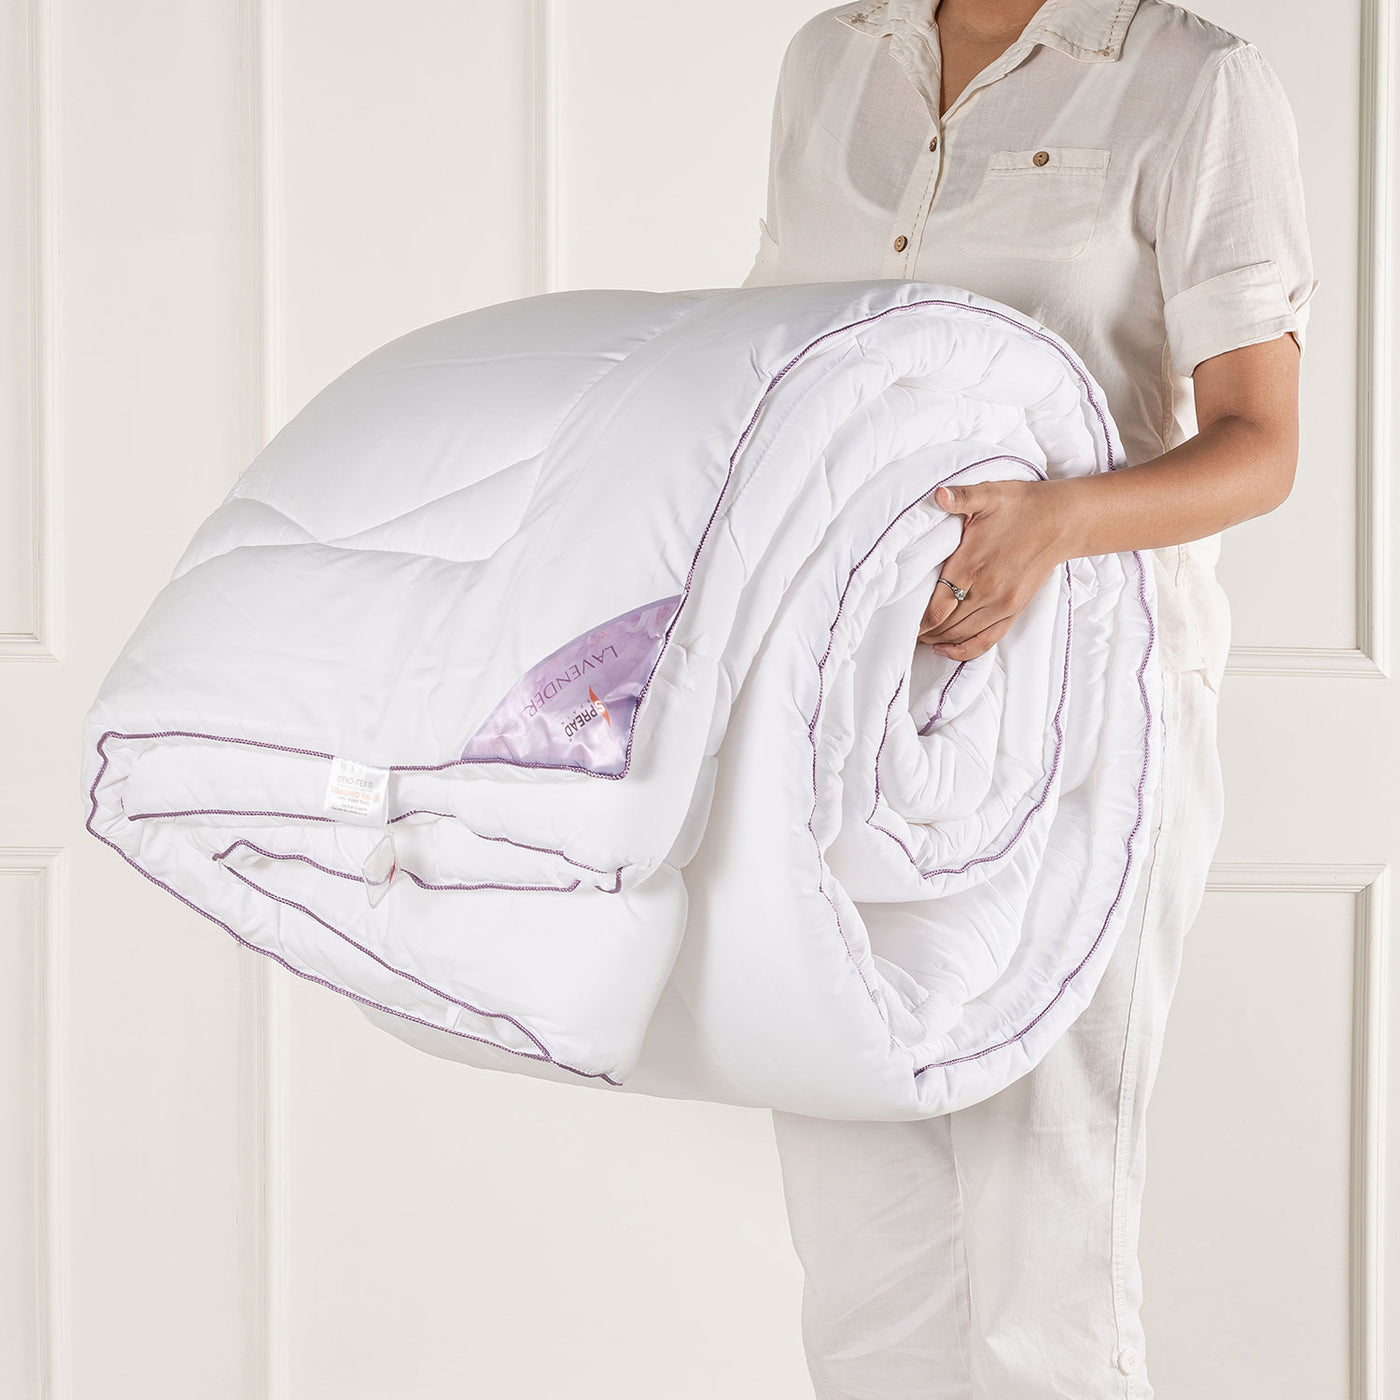 Lavender Summer Quilt, Comforter - 200 GSM OEKO Certified